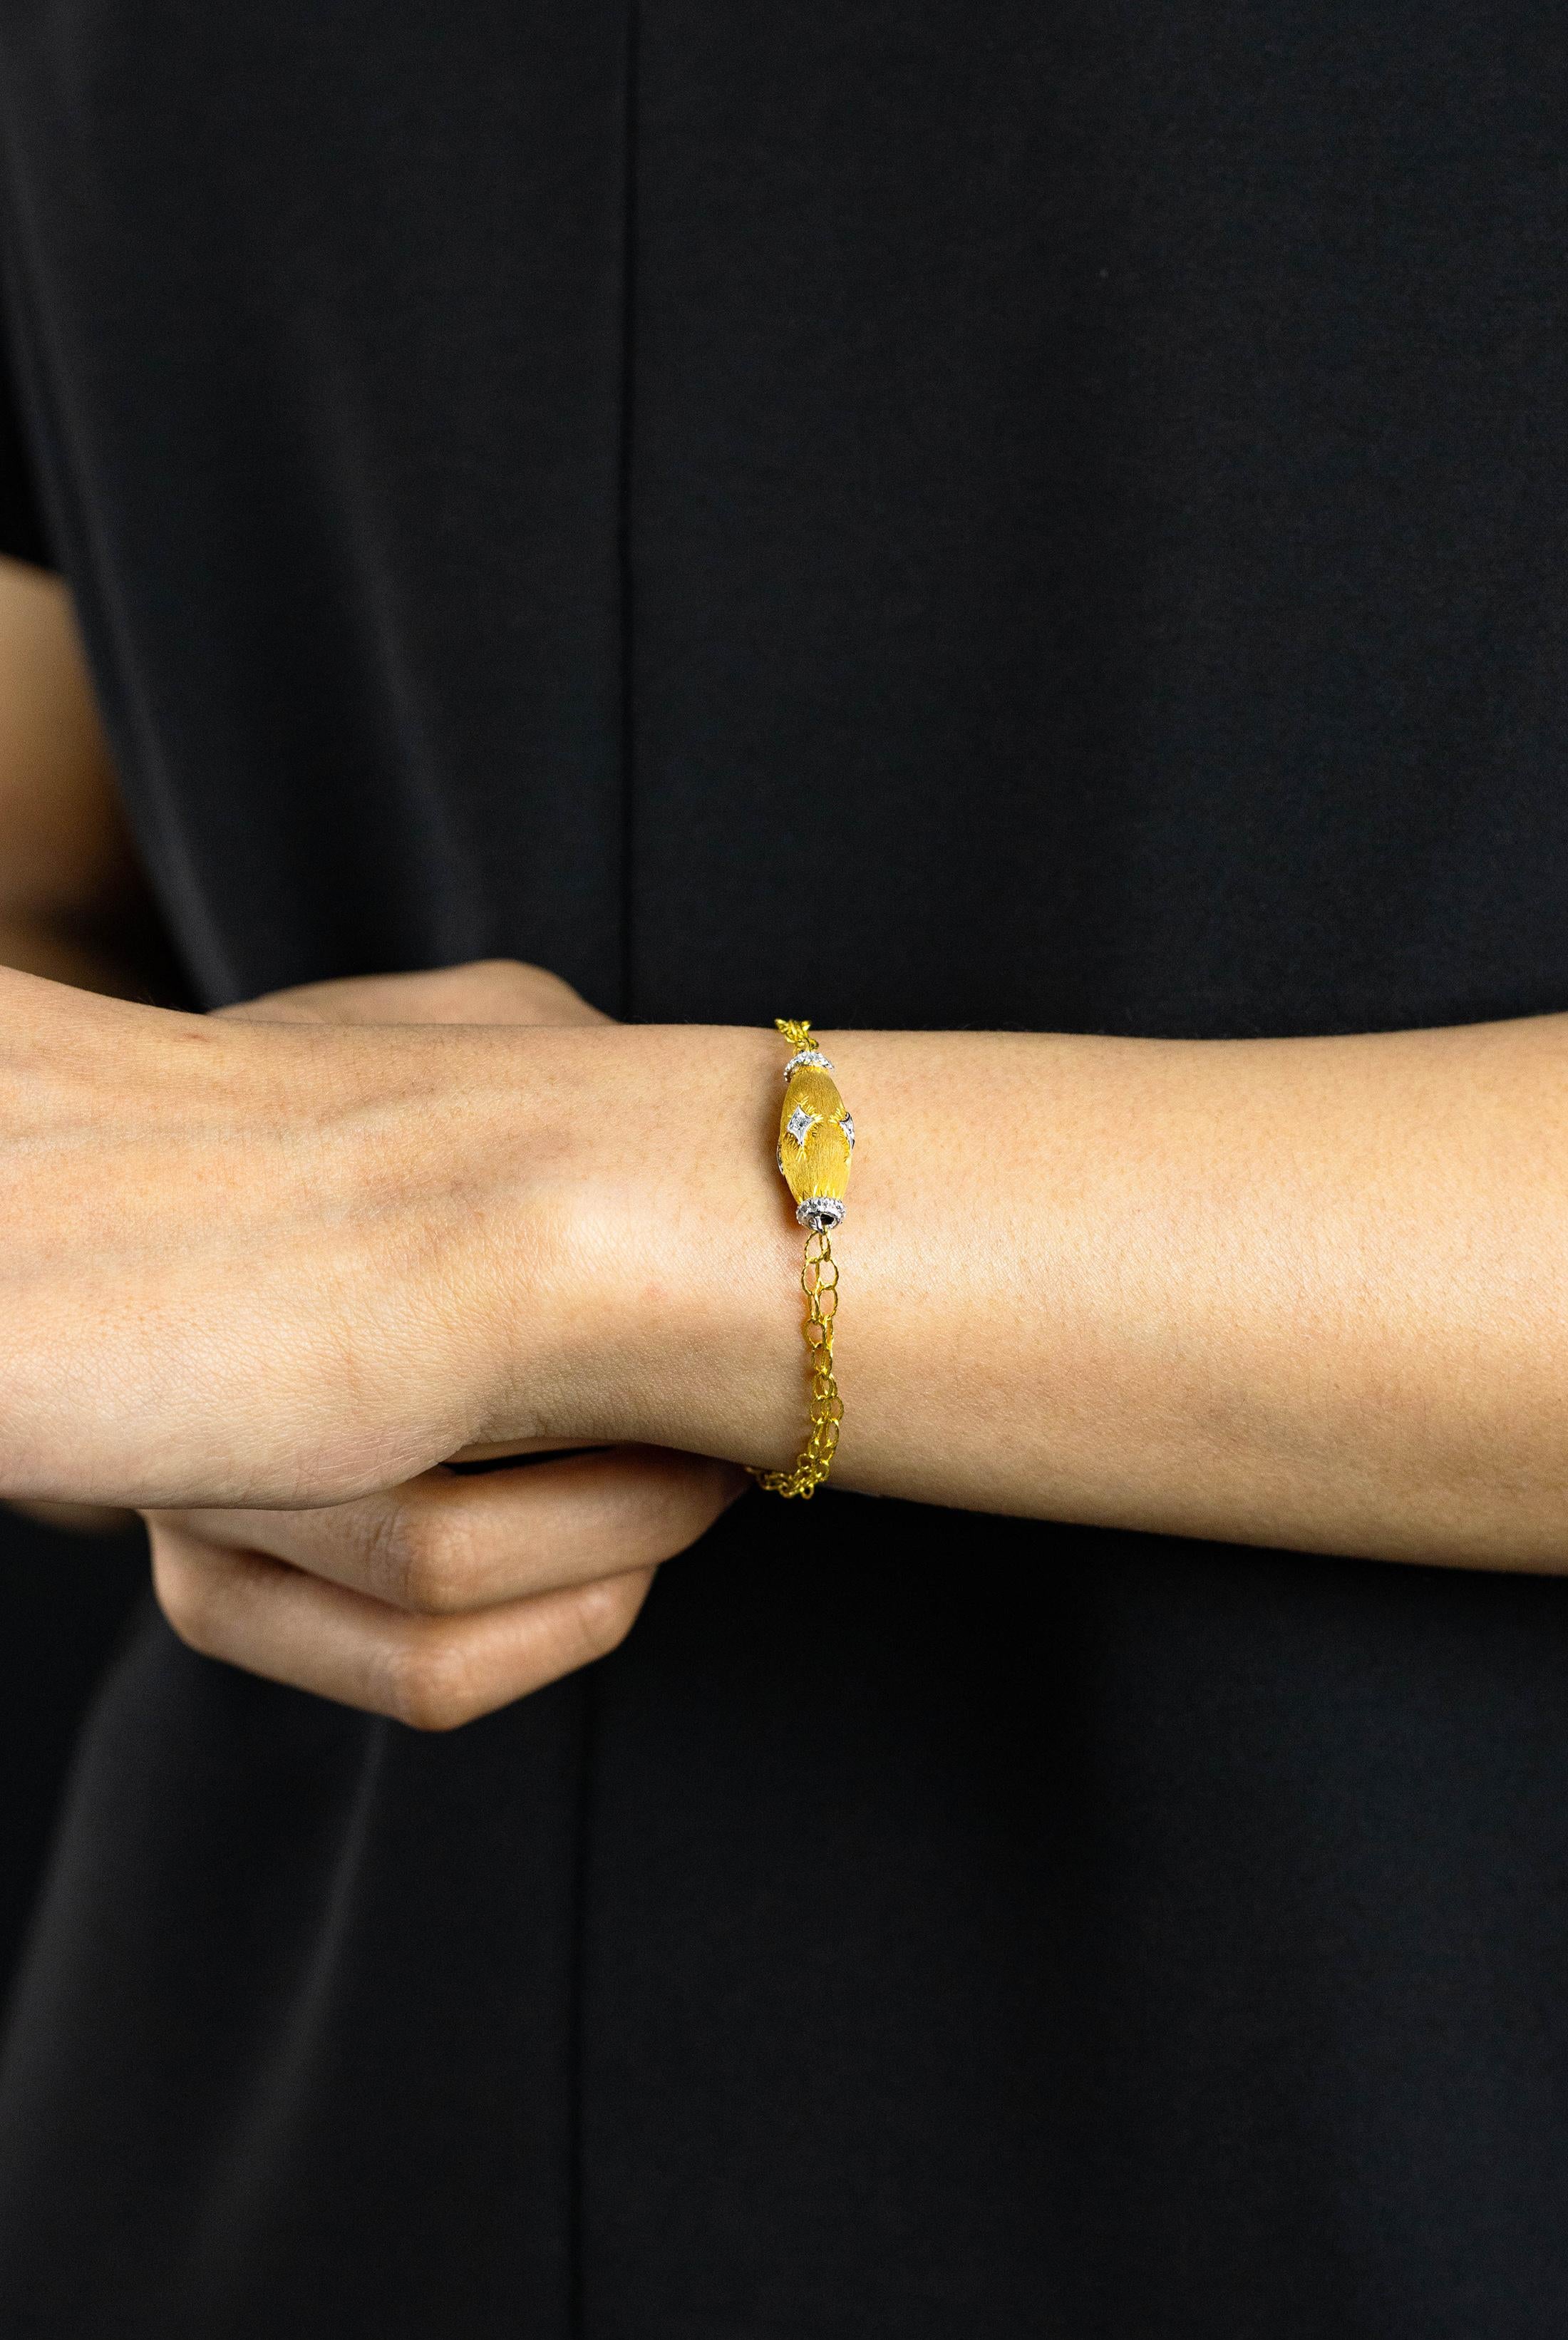 Ein einfaches und einzigartiges Armband mit einer eiförmigen Figur, die mit runden Brillanten besetzt ist. Das Armband hat eine gebürstete Oberfläche. Die Diamanten wiegen insgesamt 0,10 Karat. Fein gearbeitet in 18 Karat Weiß- und Gelbgold.